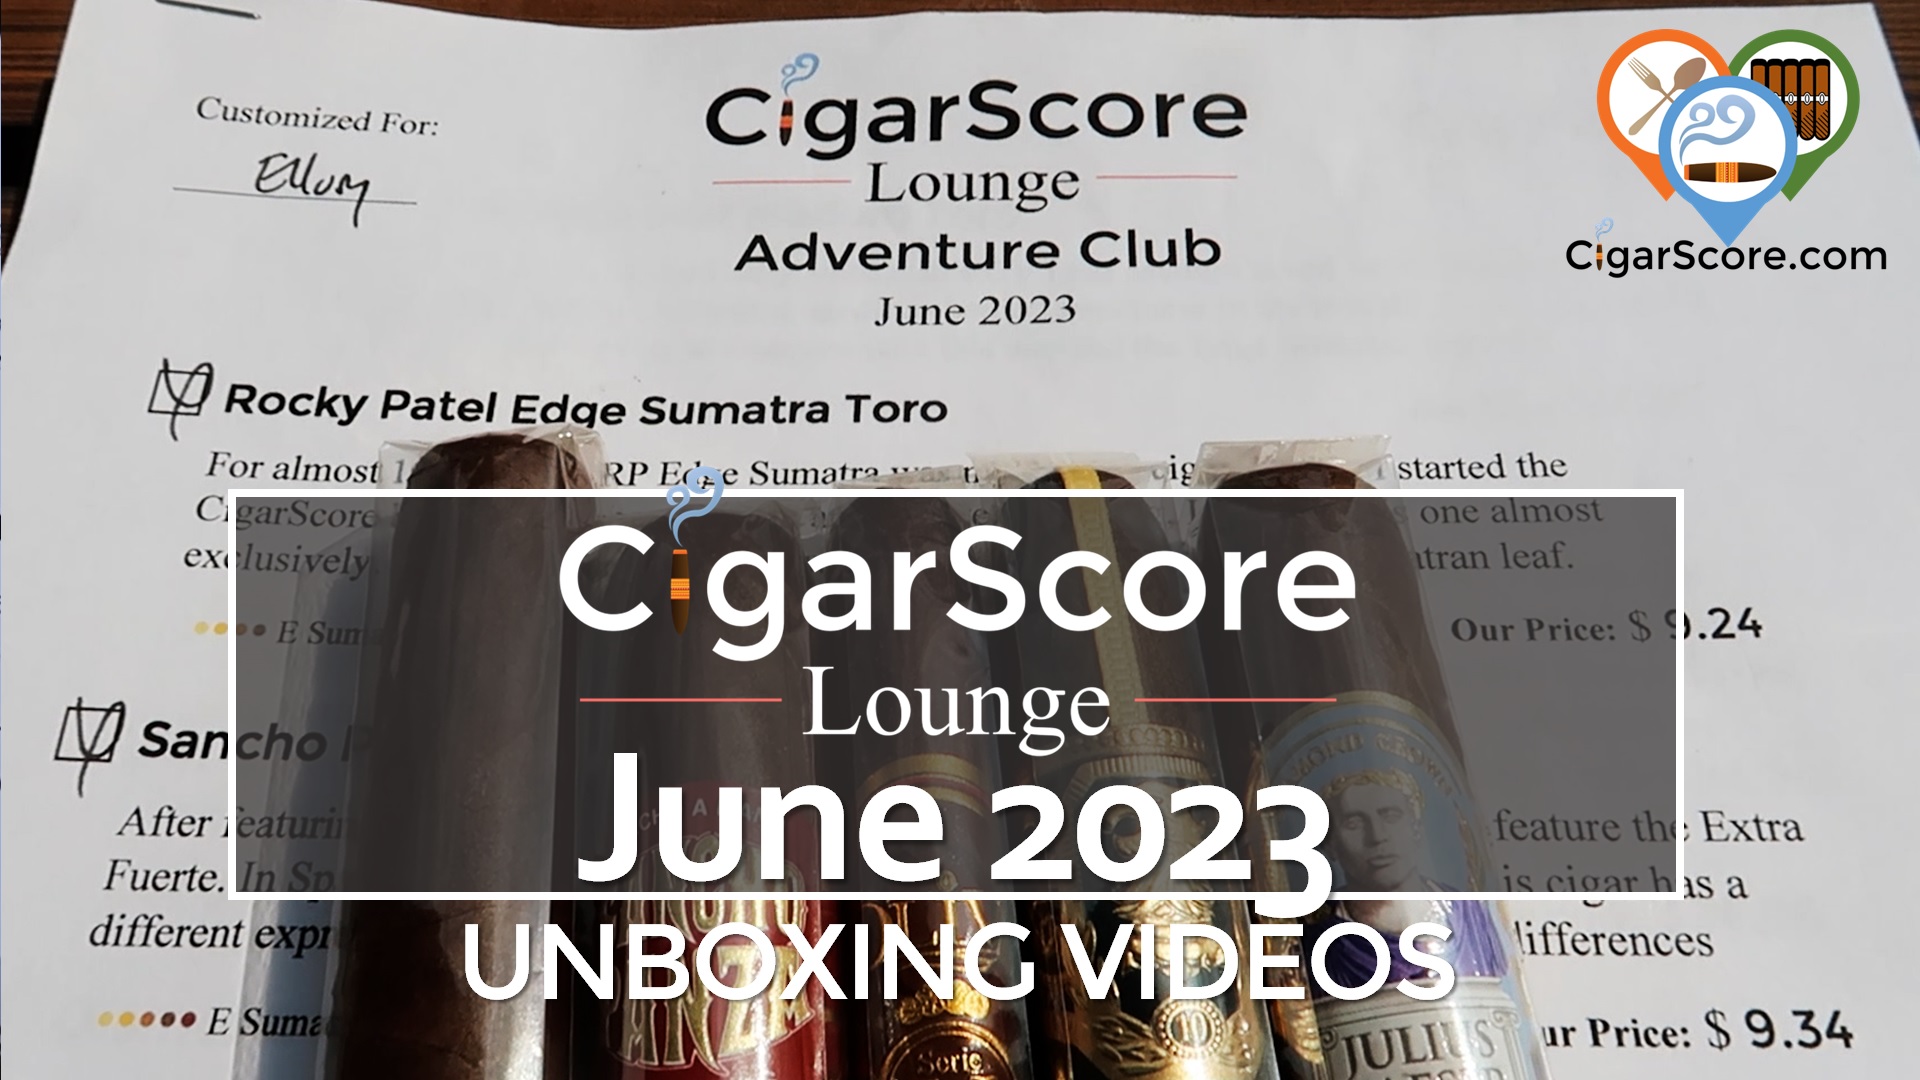 UNBOXING – CSL Adventure Club JUNE 2023 – Est. $61.14 Value?